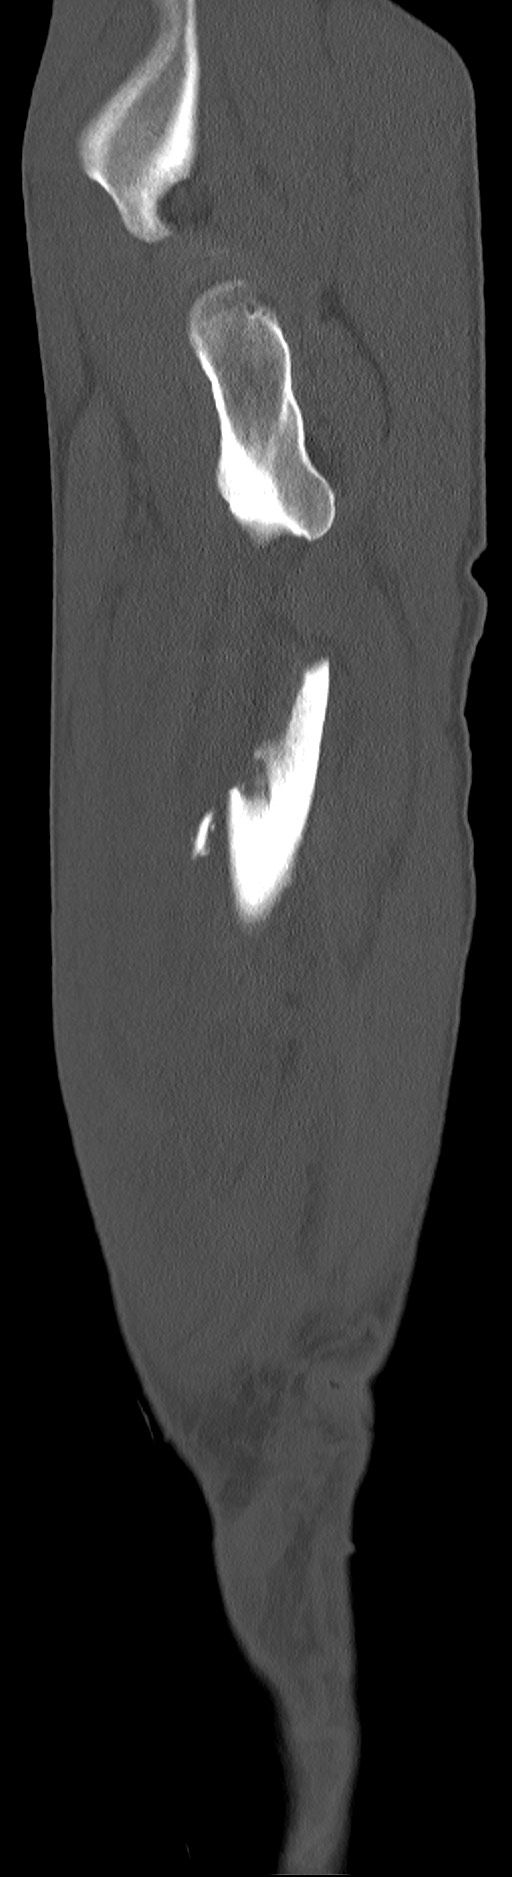 Chronic osteomyelitis (with sequestrum) (Radiopaedia 74813-85822 C 91).jpg